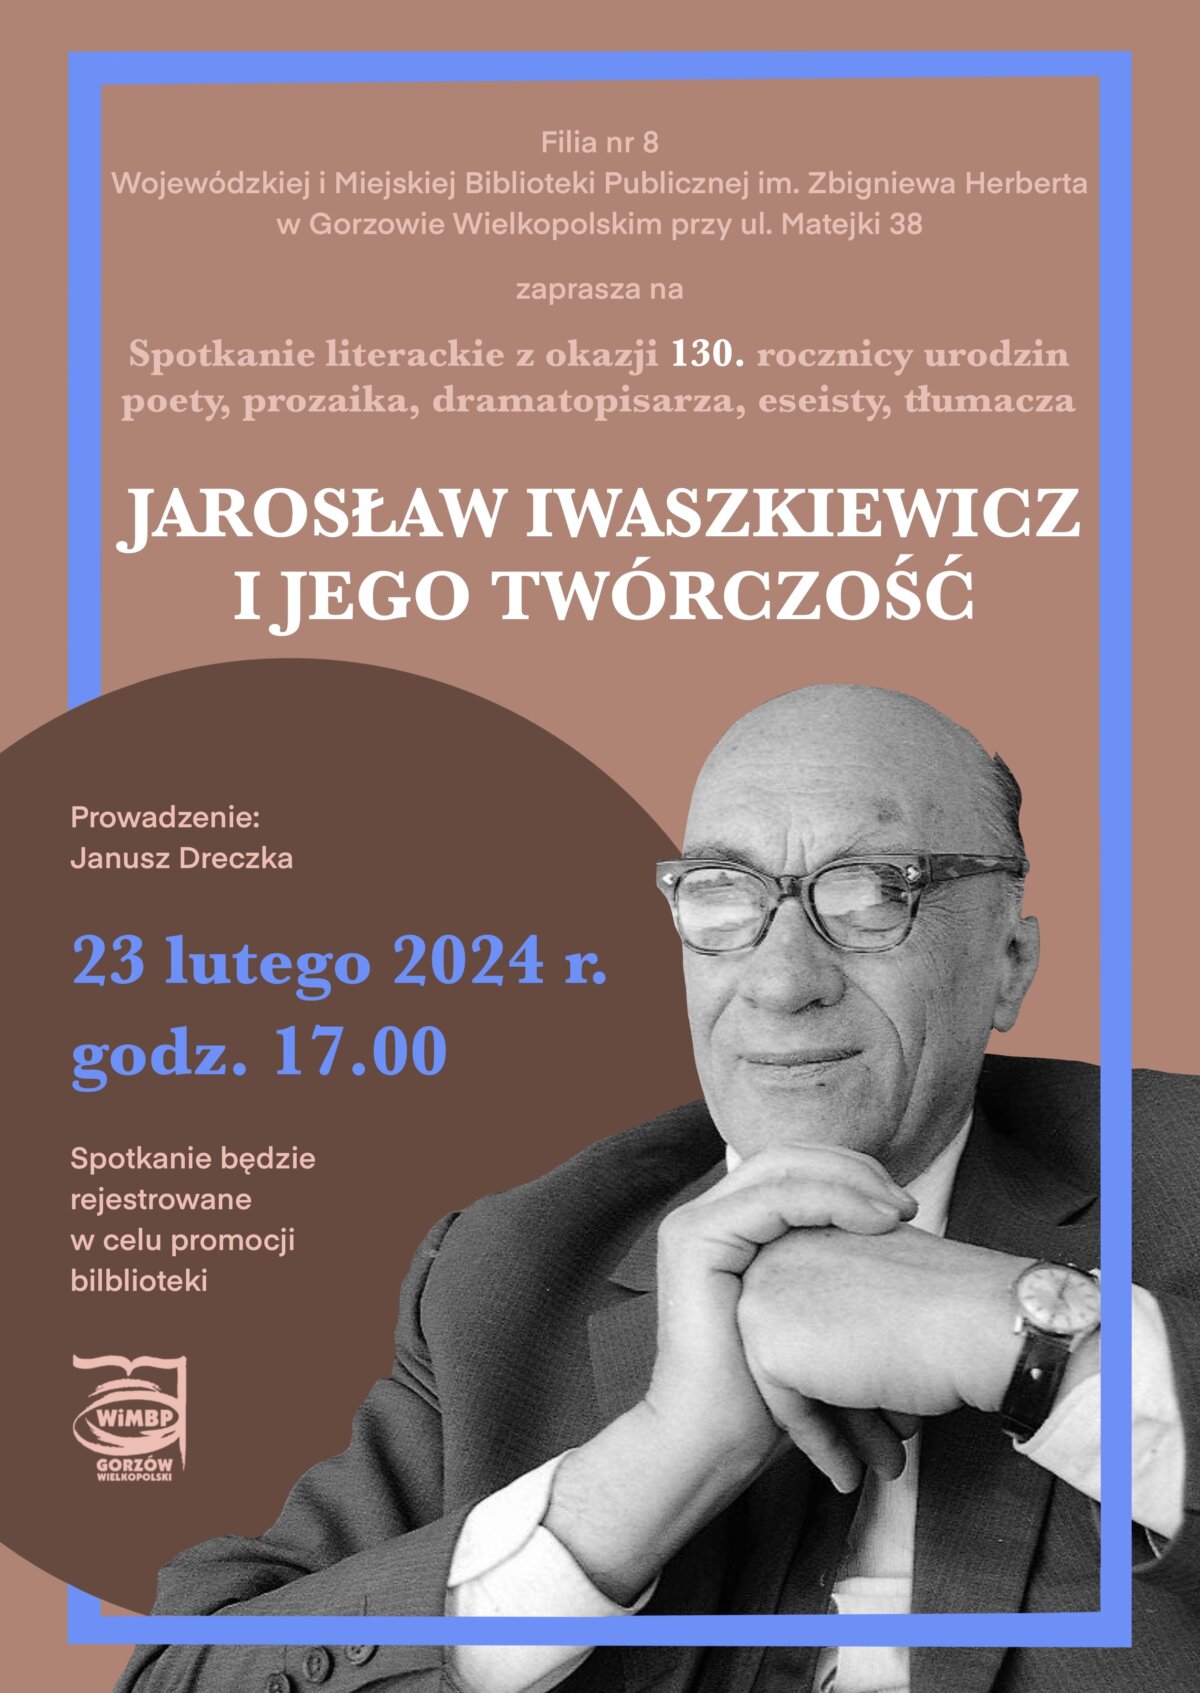 plakat zapowiadający wydarzenie o Jarosławie Iwaszkiewiczu.